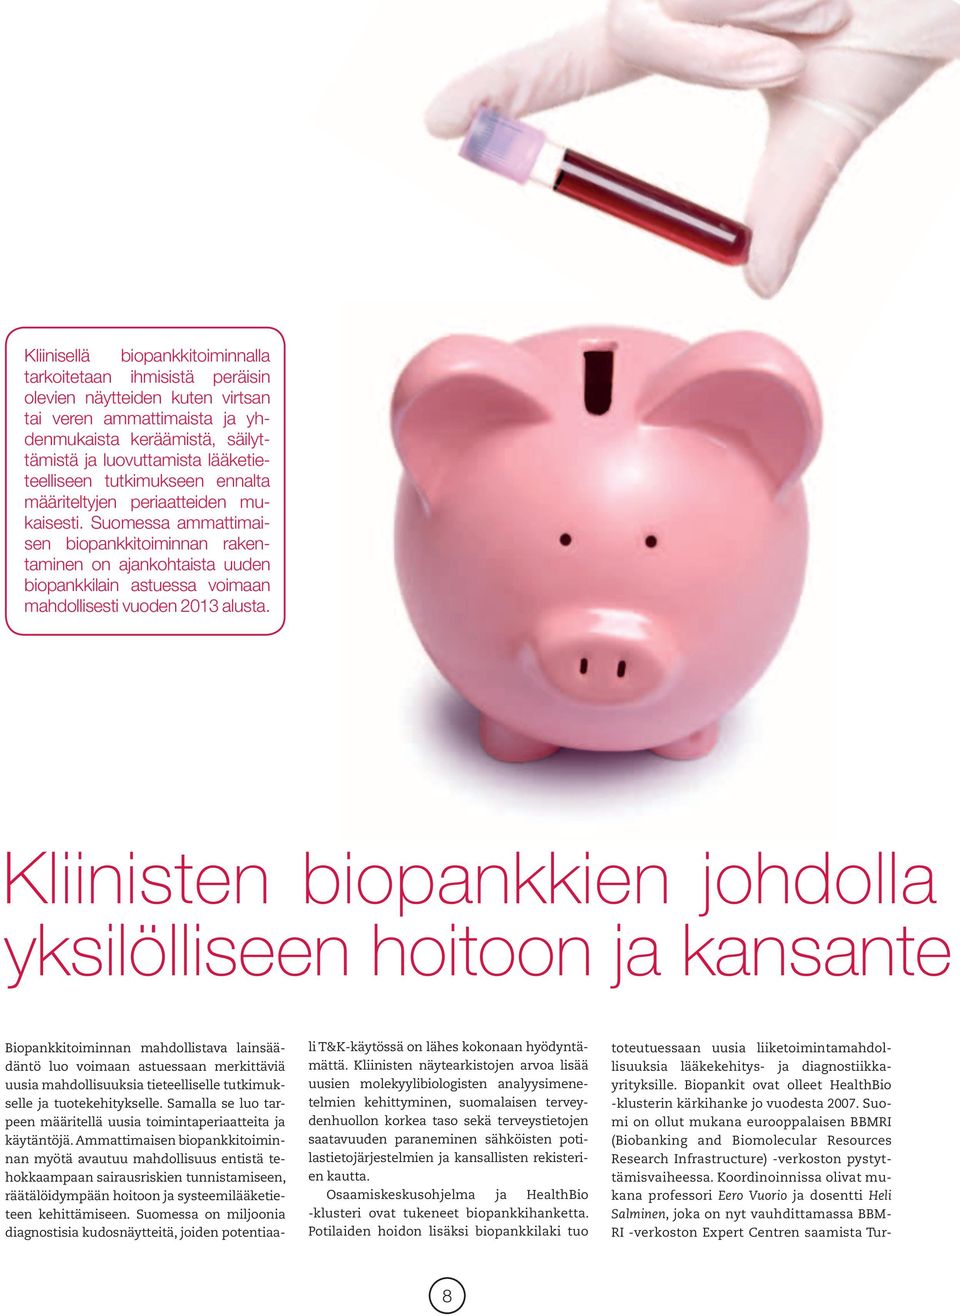 Suomessa ammattimaisen biopankkitoiminnan rakentaminen on ajankohtaista uuden biopankkilain astuessa voimaan mahdollisesti vuoden 2013 alusta.